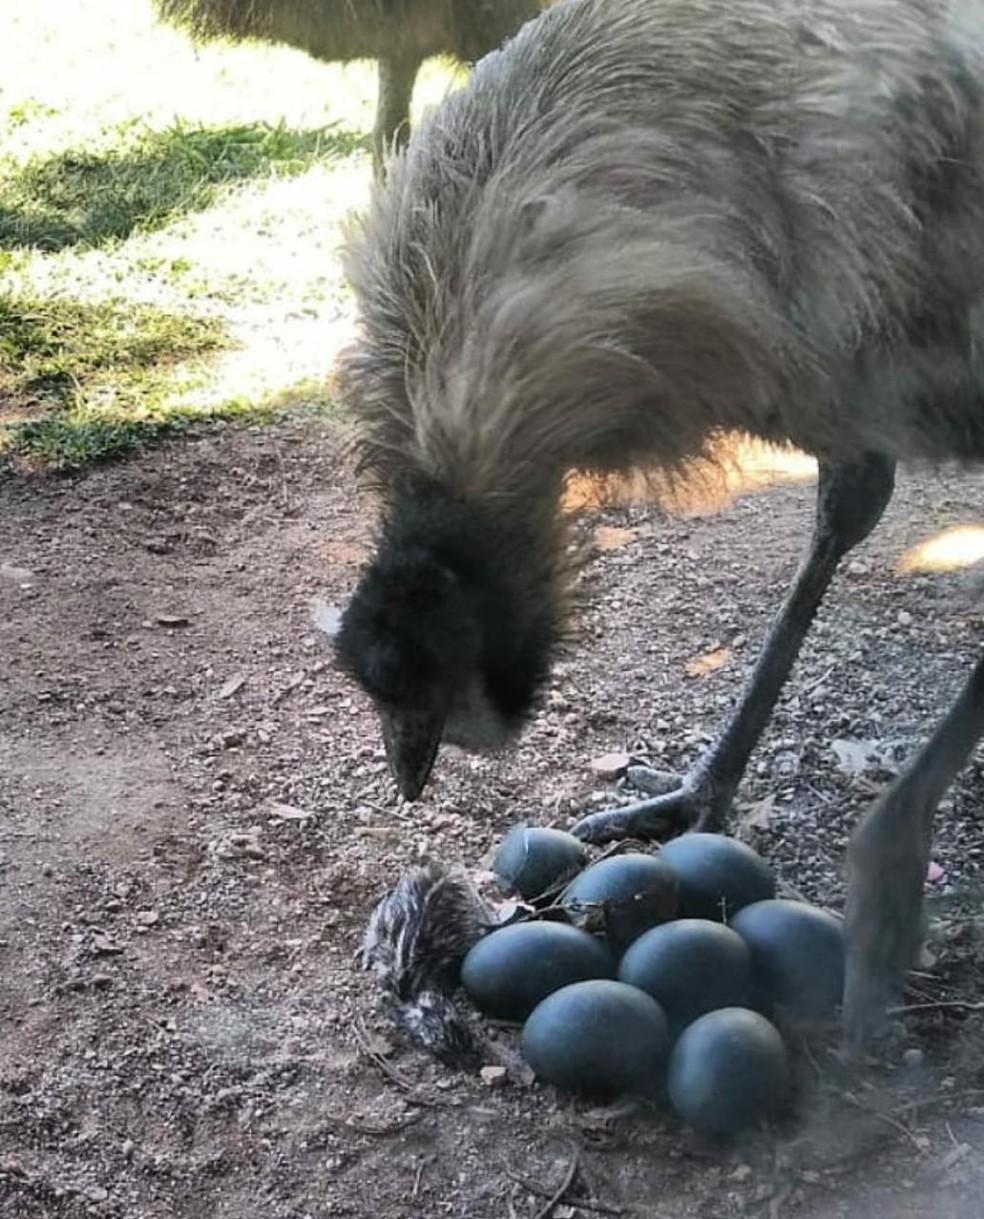 Emu botou nove ovos em Balneário Camboriú — Foto: Zoológico de Balneário Camboriú/Divulgação